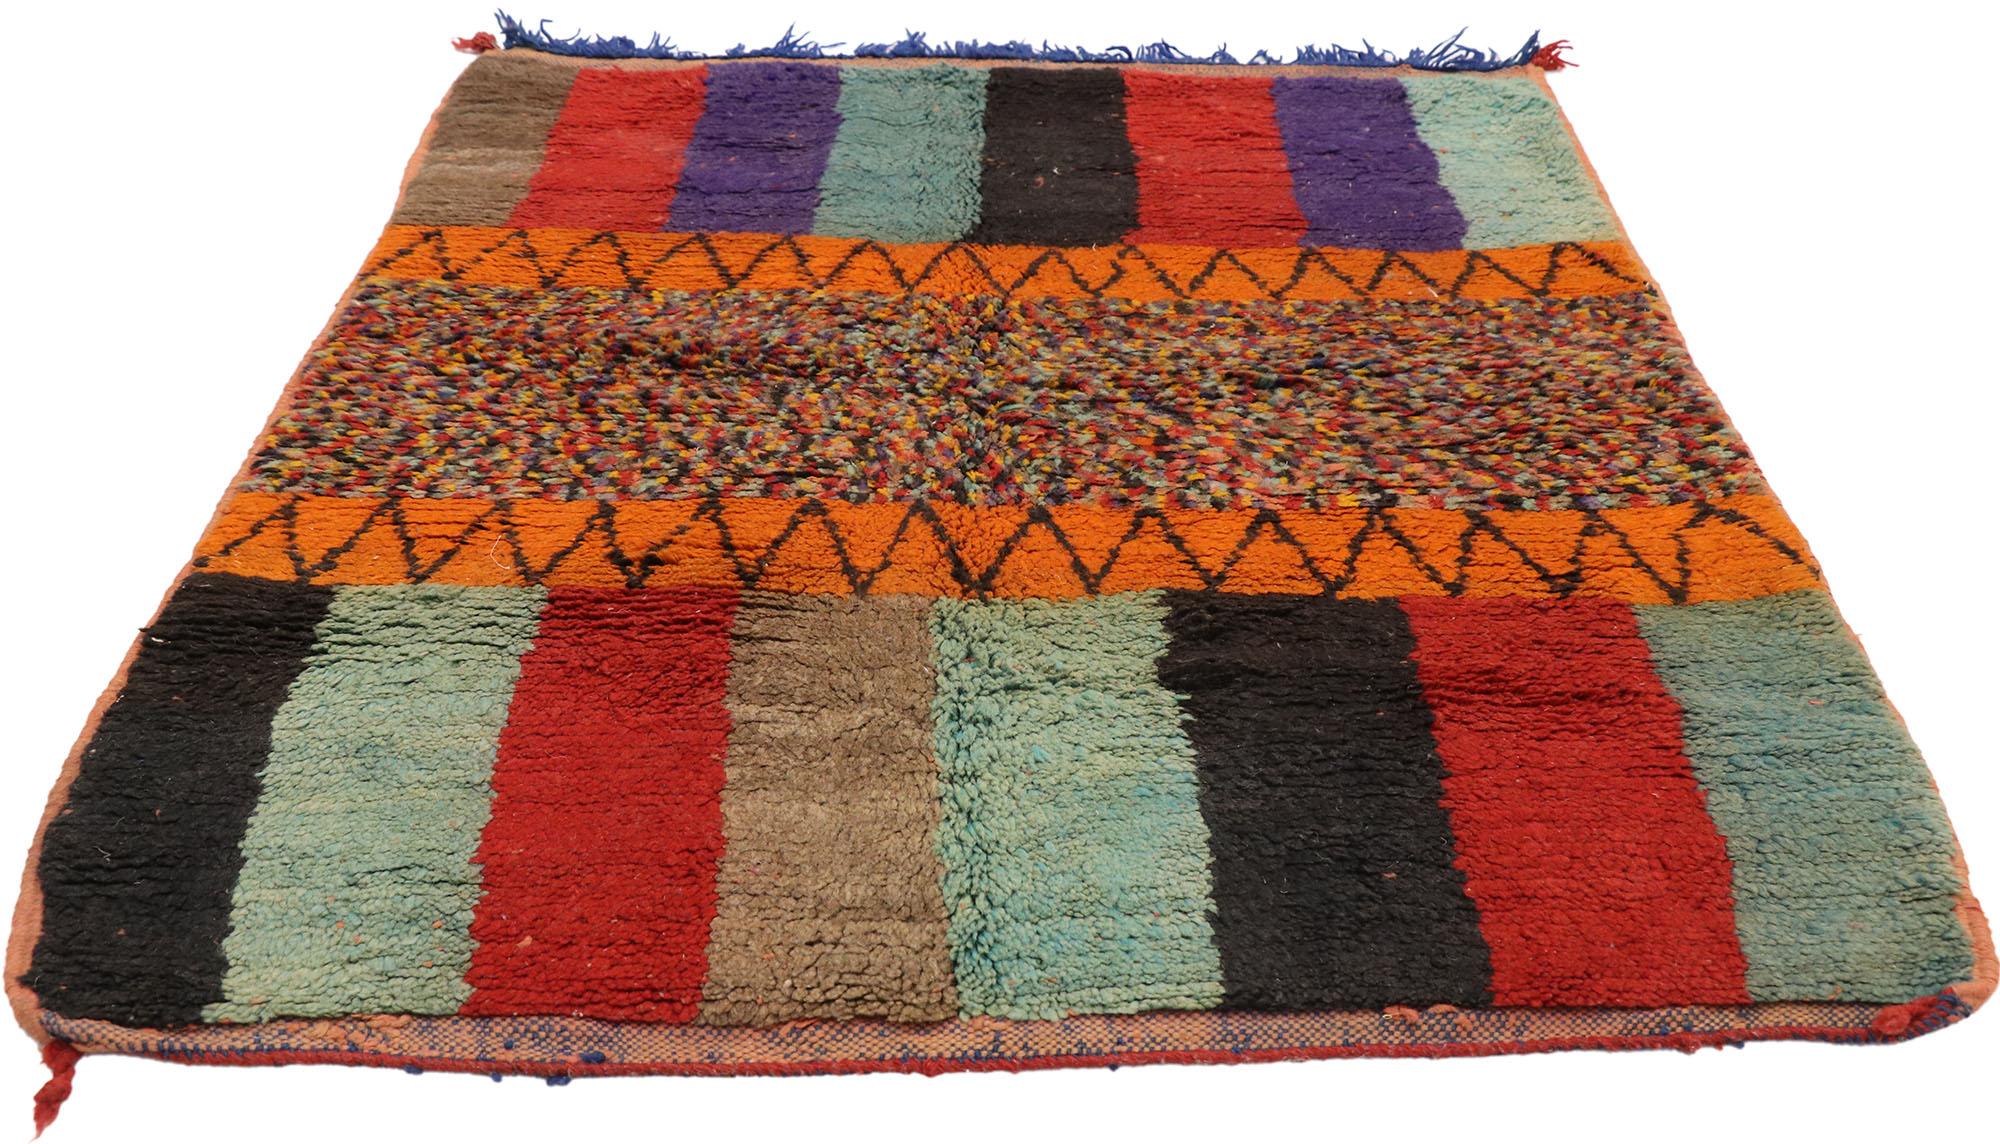 Post-Modern Vintage Berber Moroccan Rug with Color Block Design For Sale